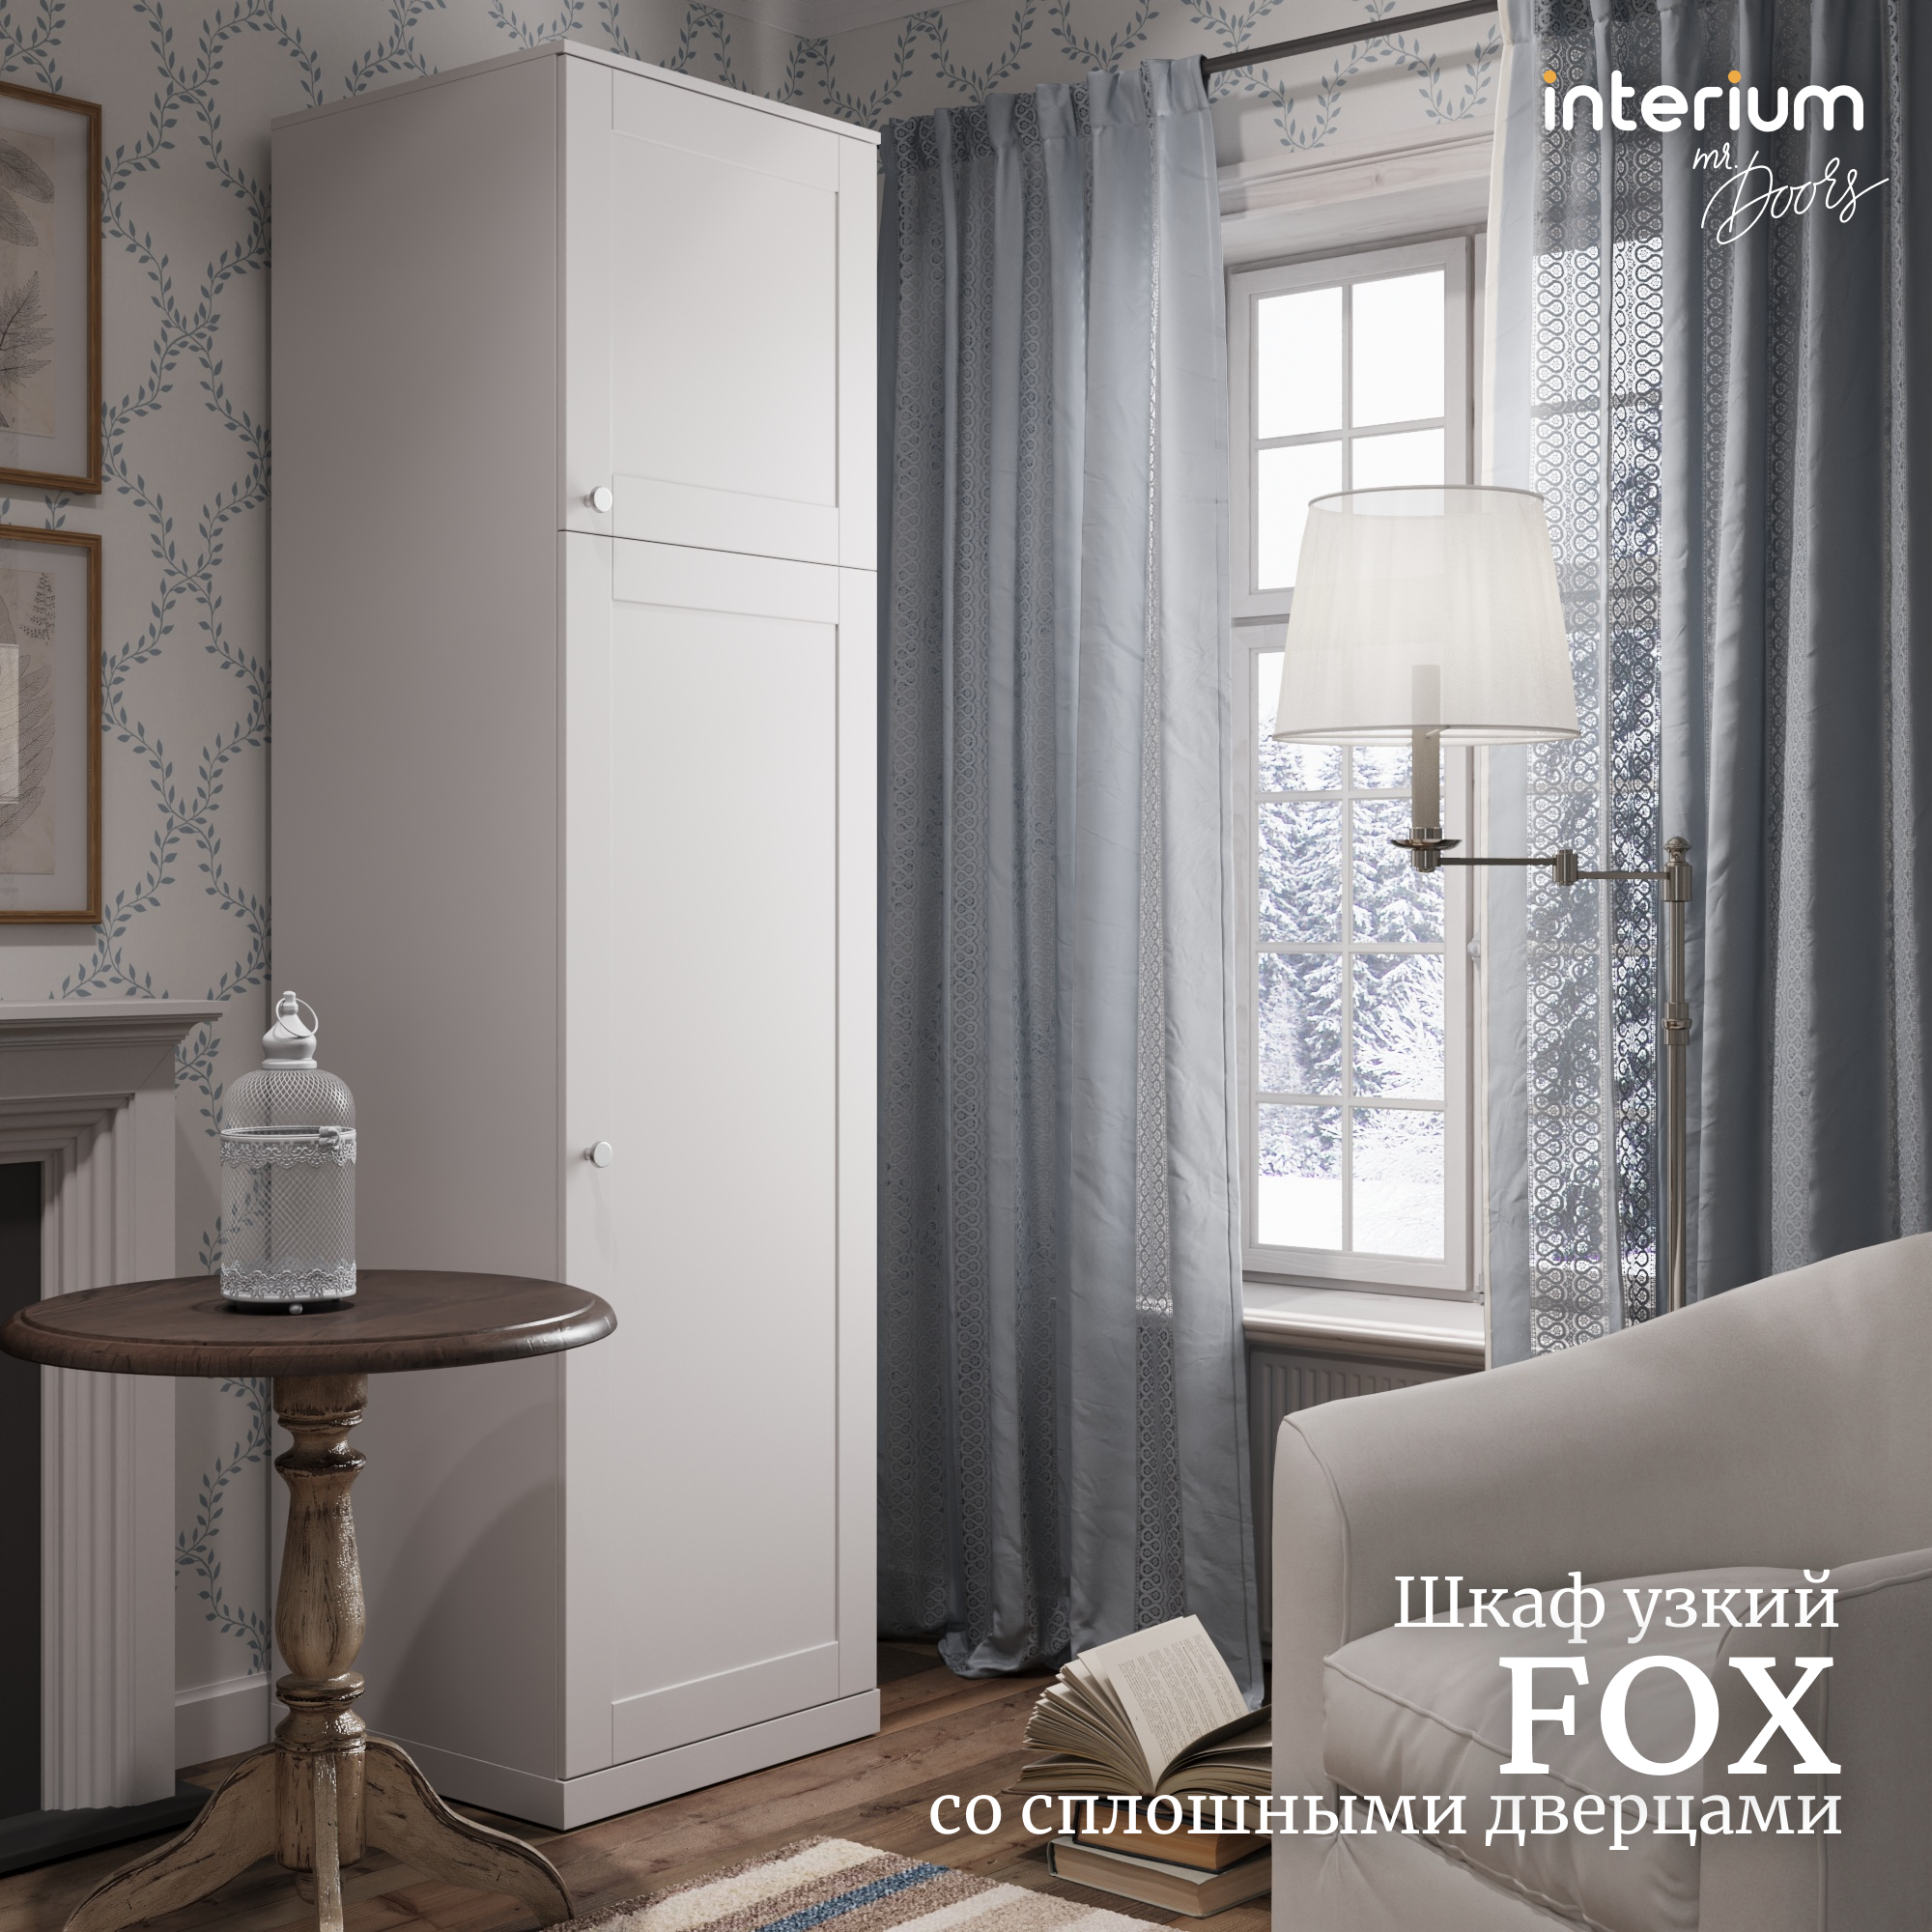 Высокий узкий шкаф для одежды со сплошными дверцами by Mr. Doors - Fox White